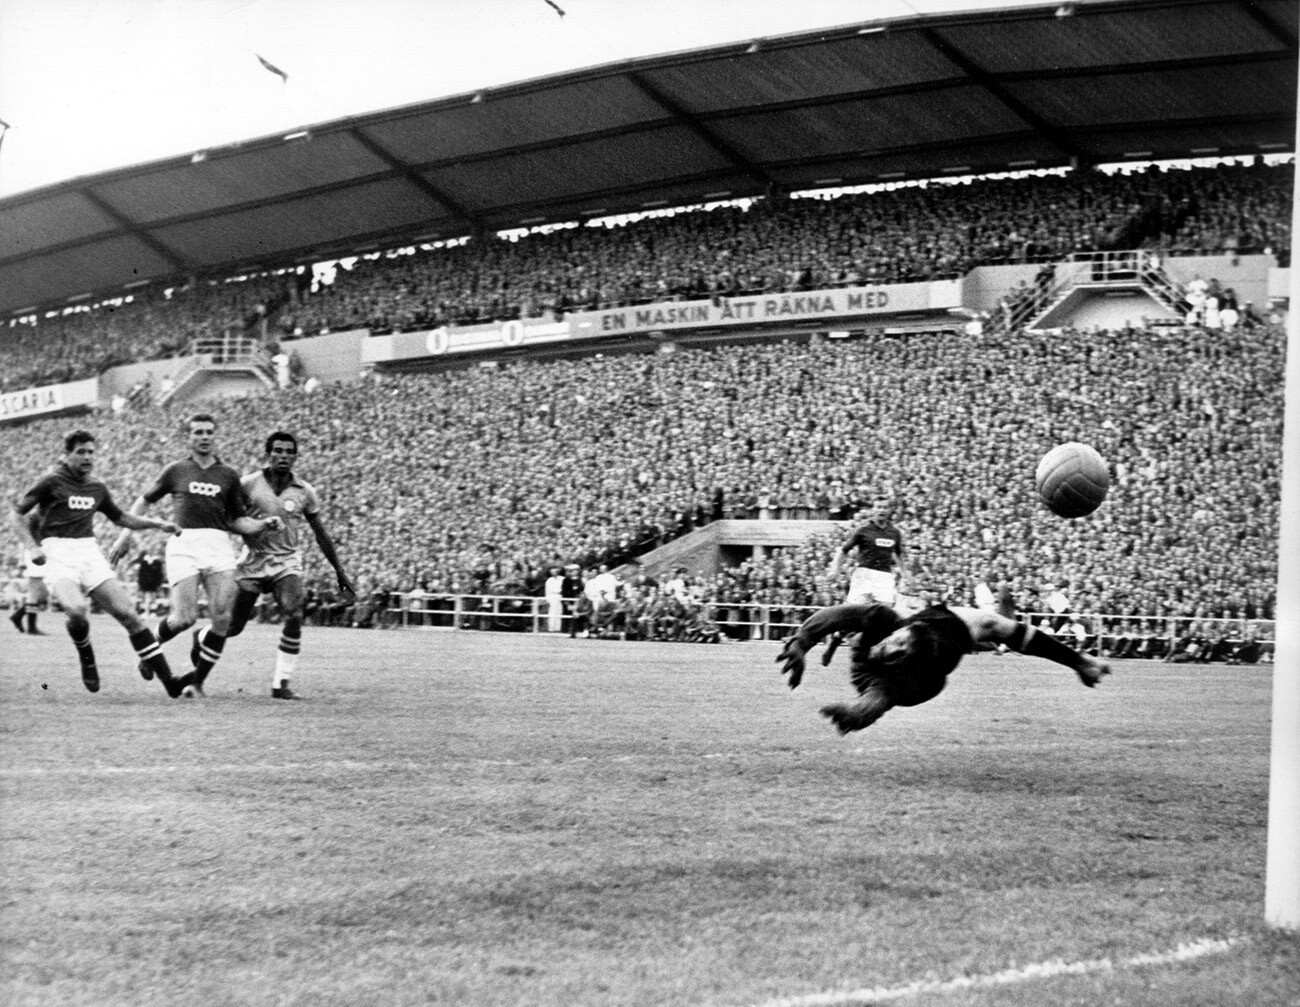 Der brasilianische Stürmer Vava schießt im Gruppenspiel der FIFA-Weltmeisterschaft 1958 gegen die UdSSR an zwei Gegenspielern vorbei und erzielt den 1:0-Führungstreffer.